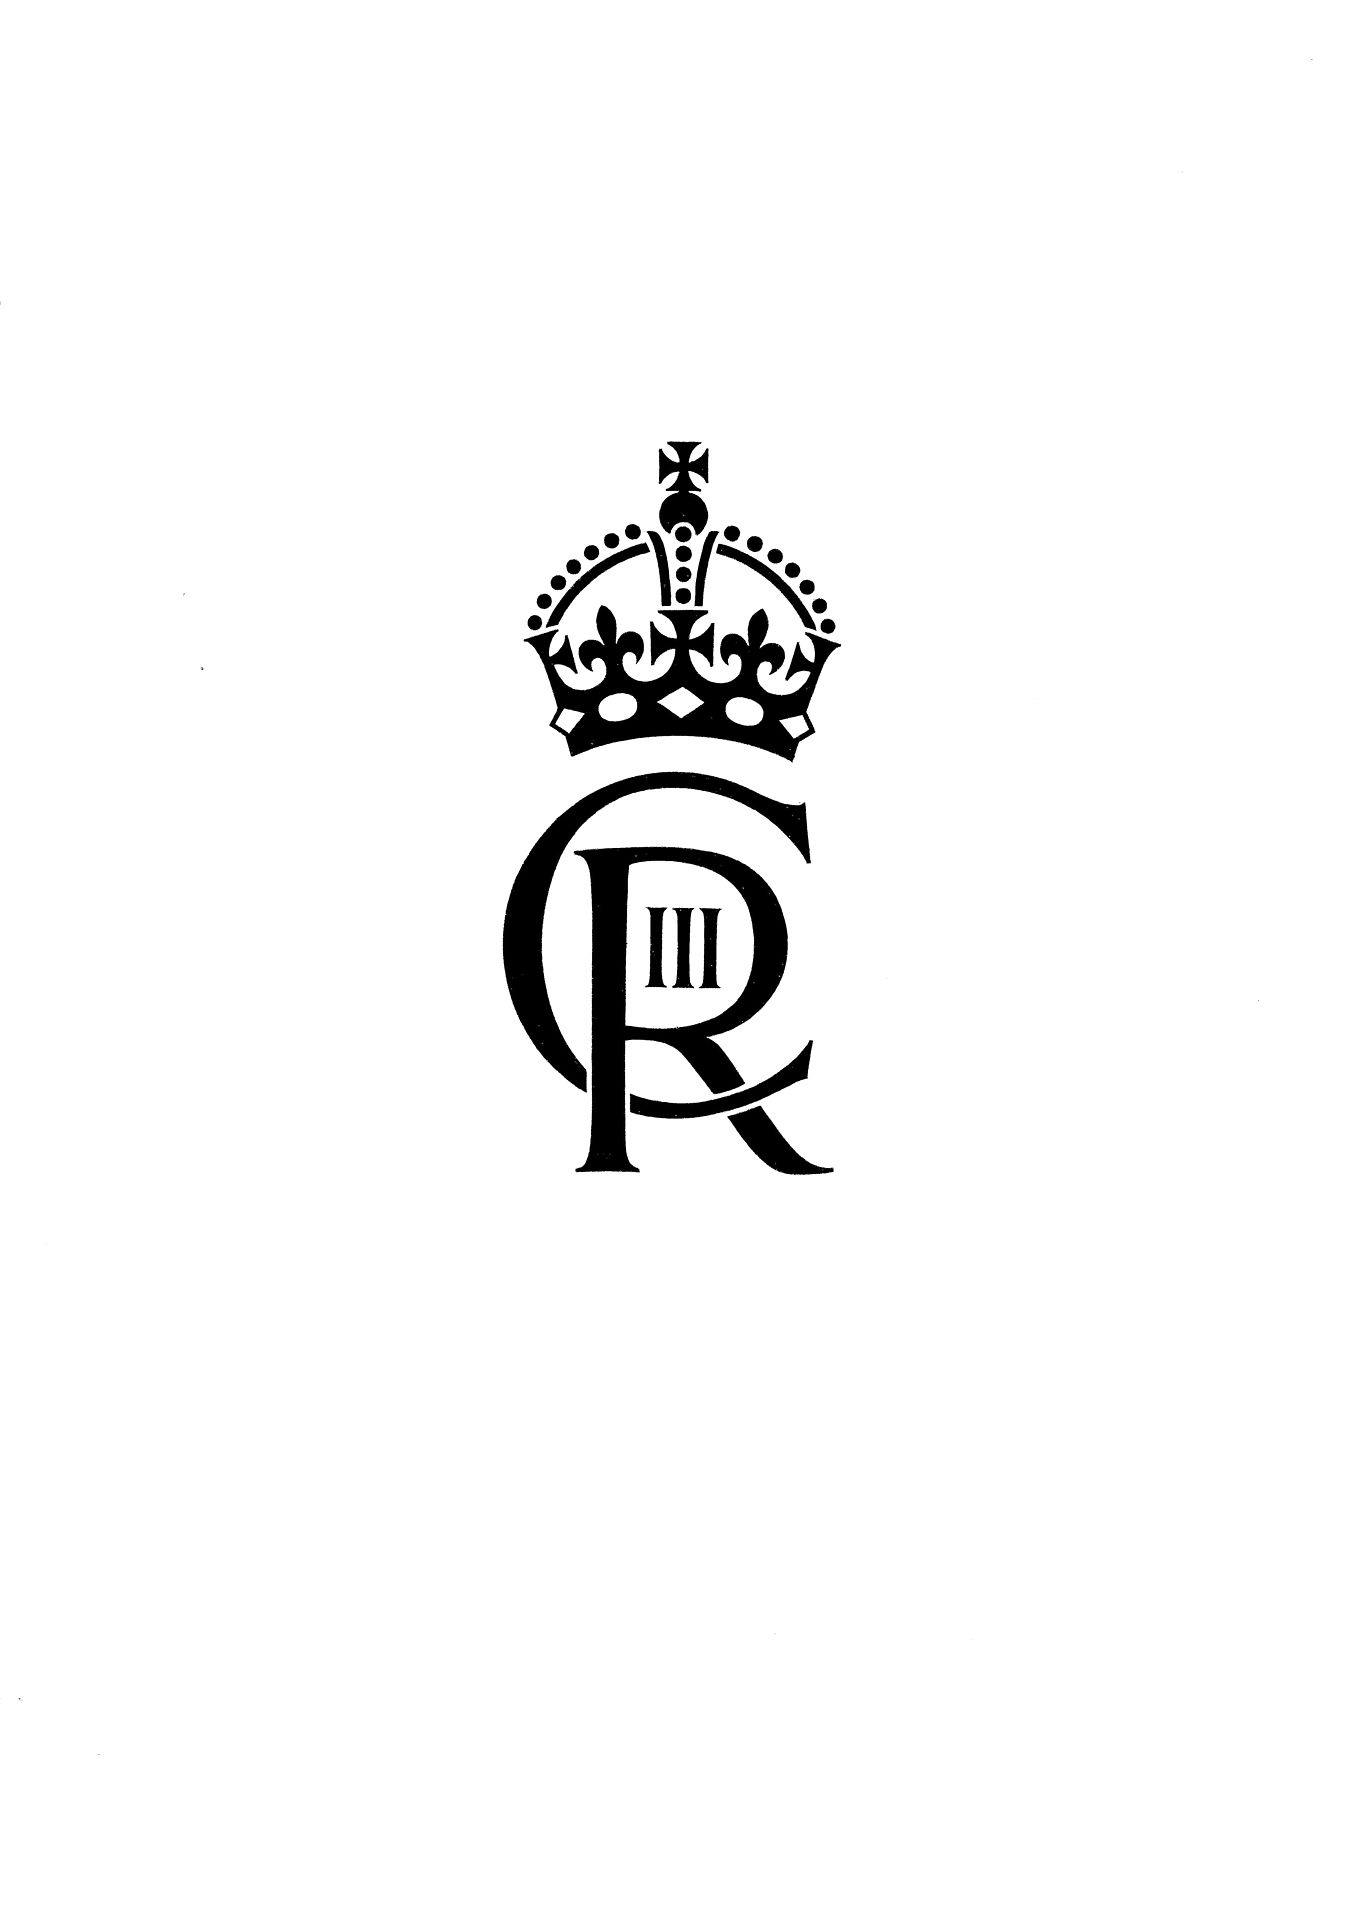 Buckingham Palace har afsløret kong Charles monogram, der ser sådan her ud.
